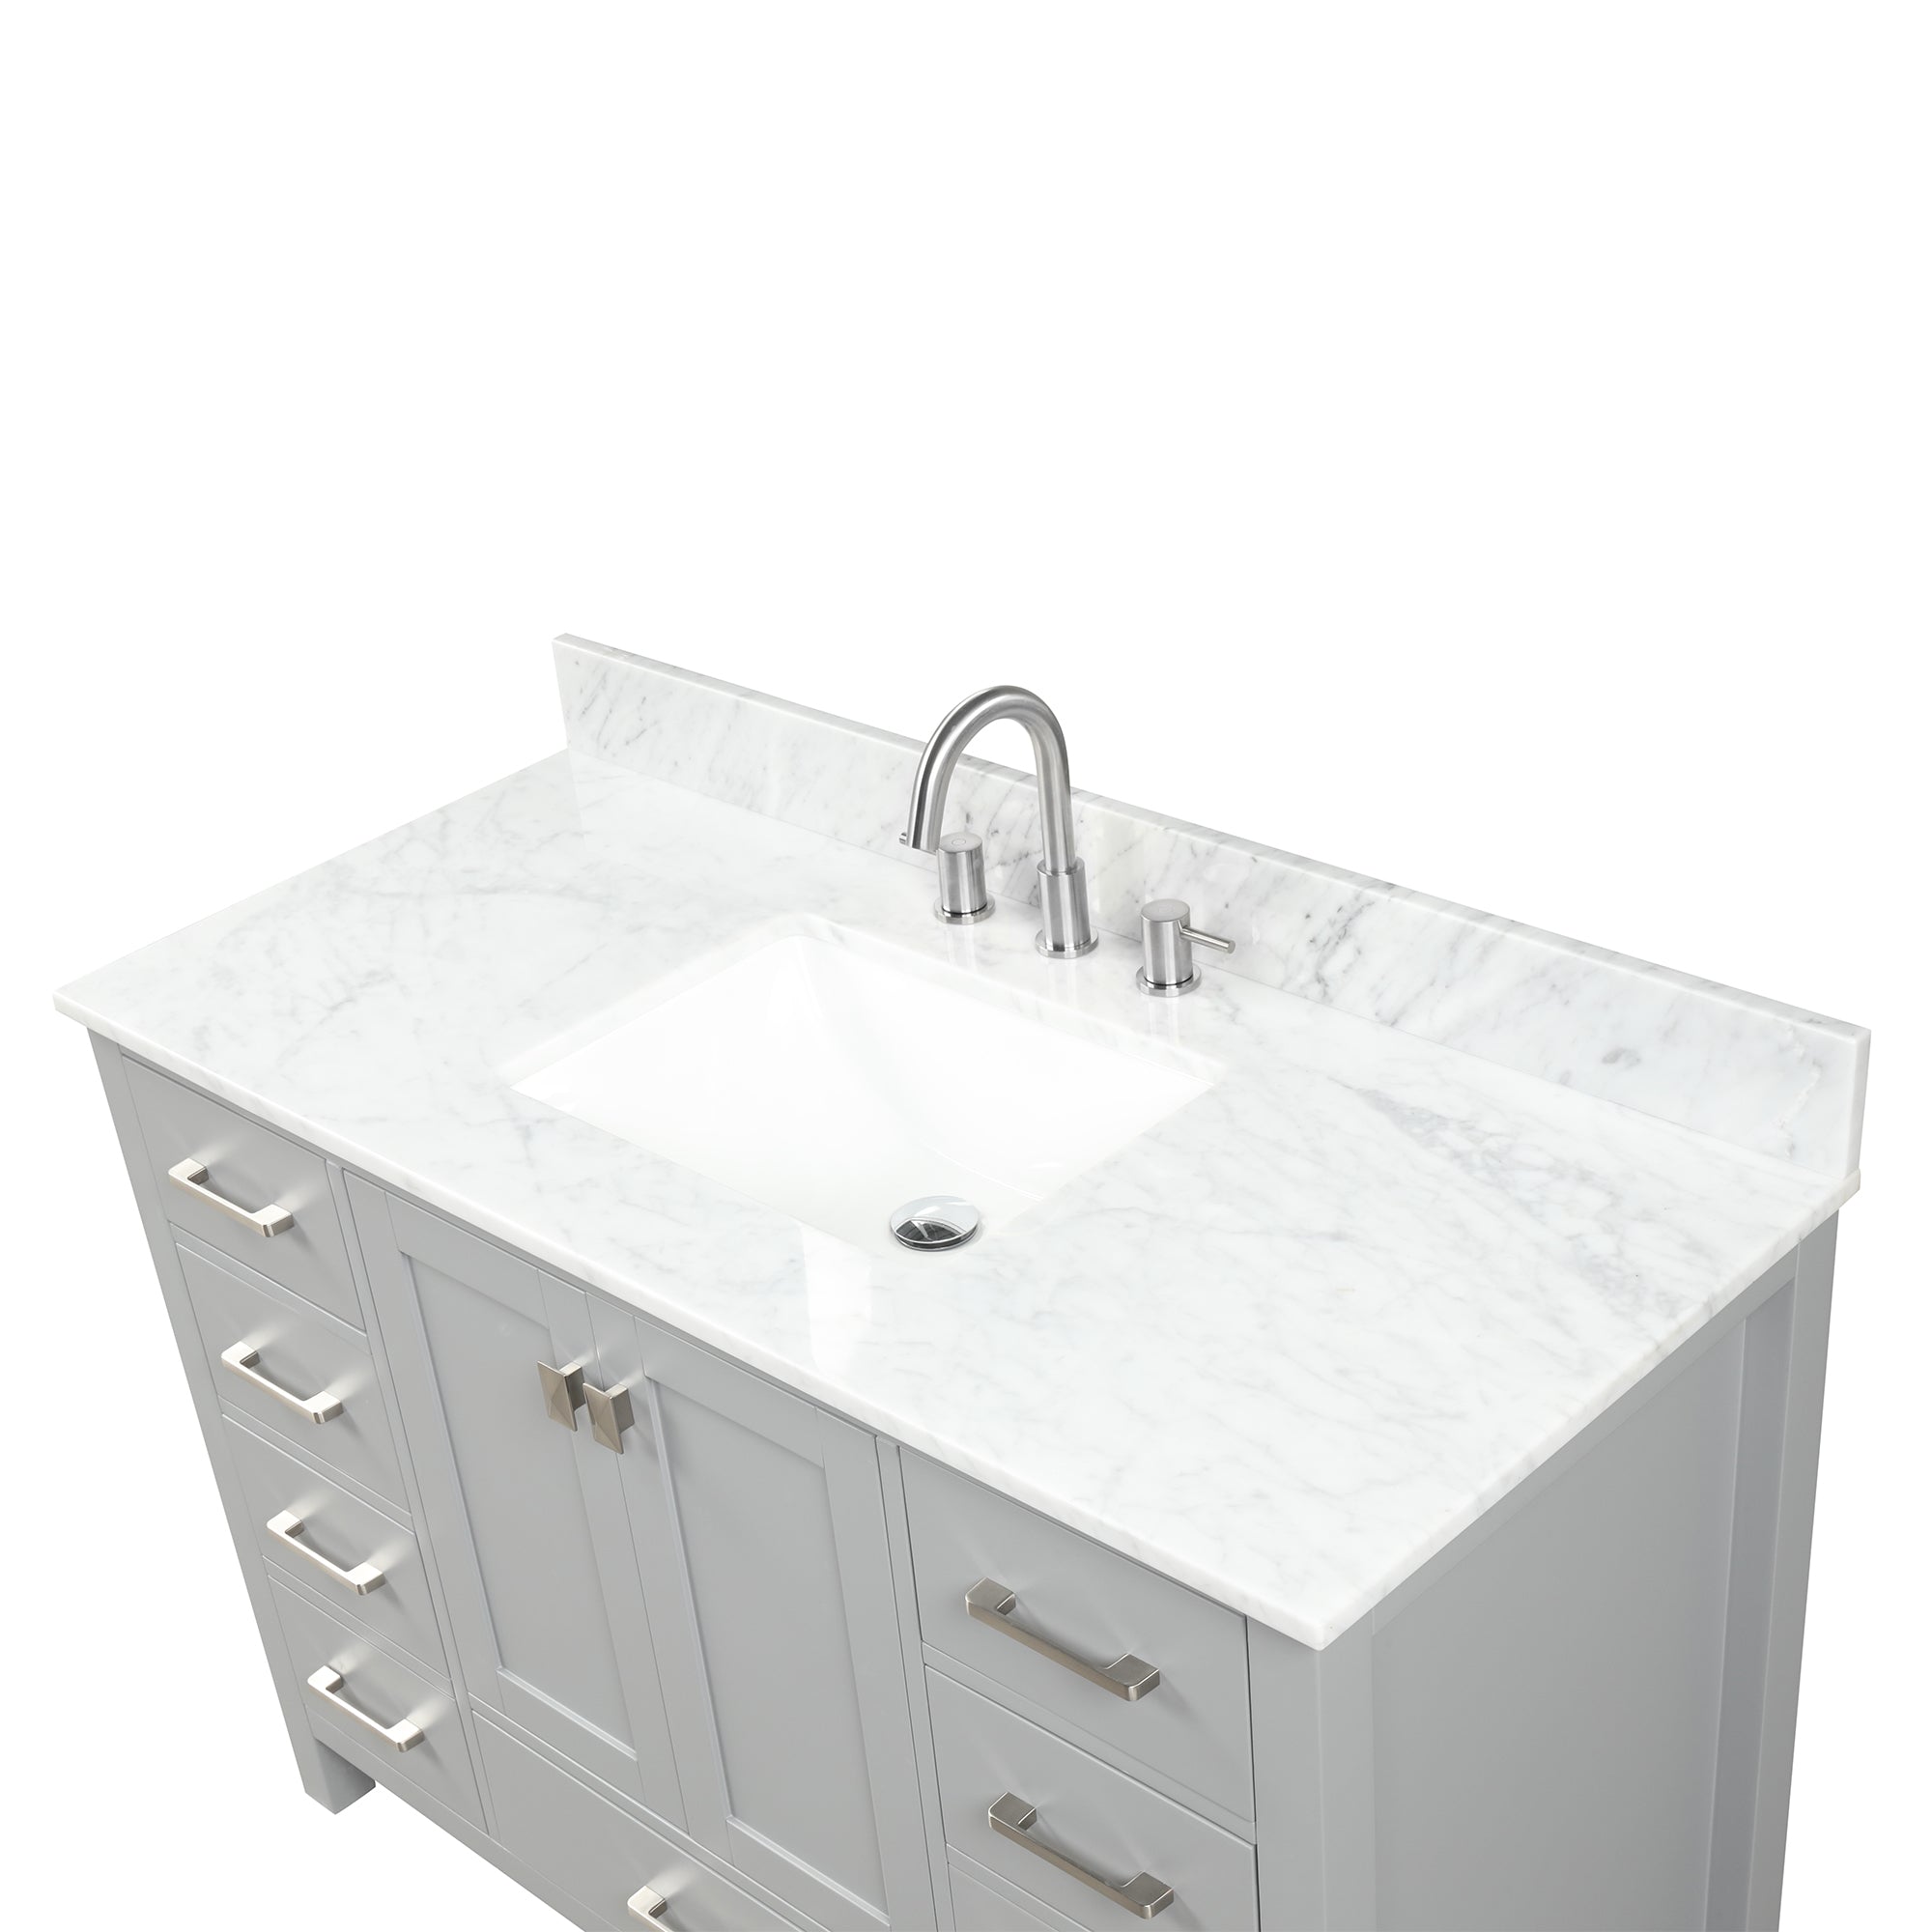 Geneva 48" Bathroom Vanity with Marble Countertop - Contemporary Bathroom Vanity